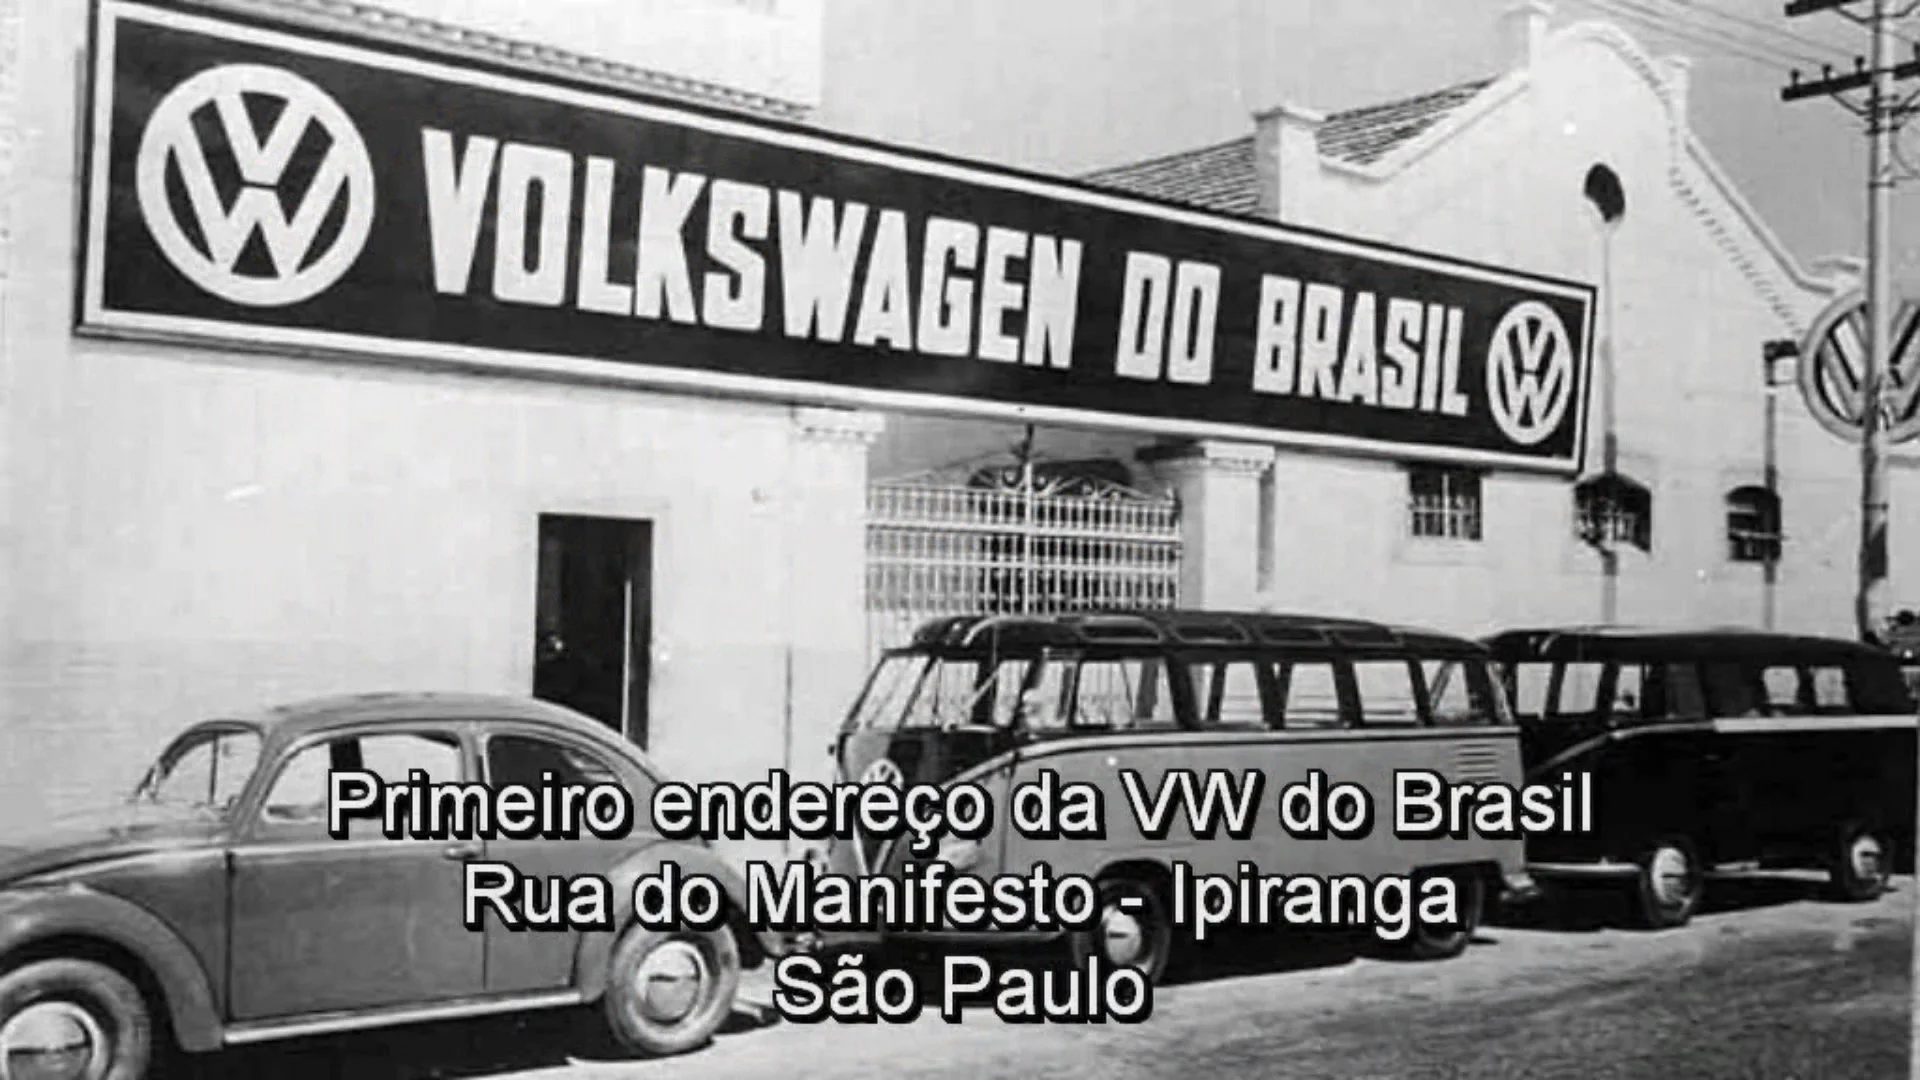 Volkswagen na Rua do Manifesto on Vimeo